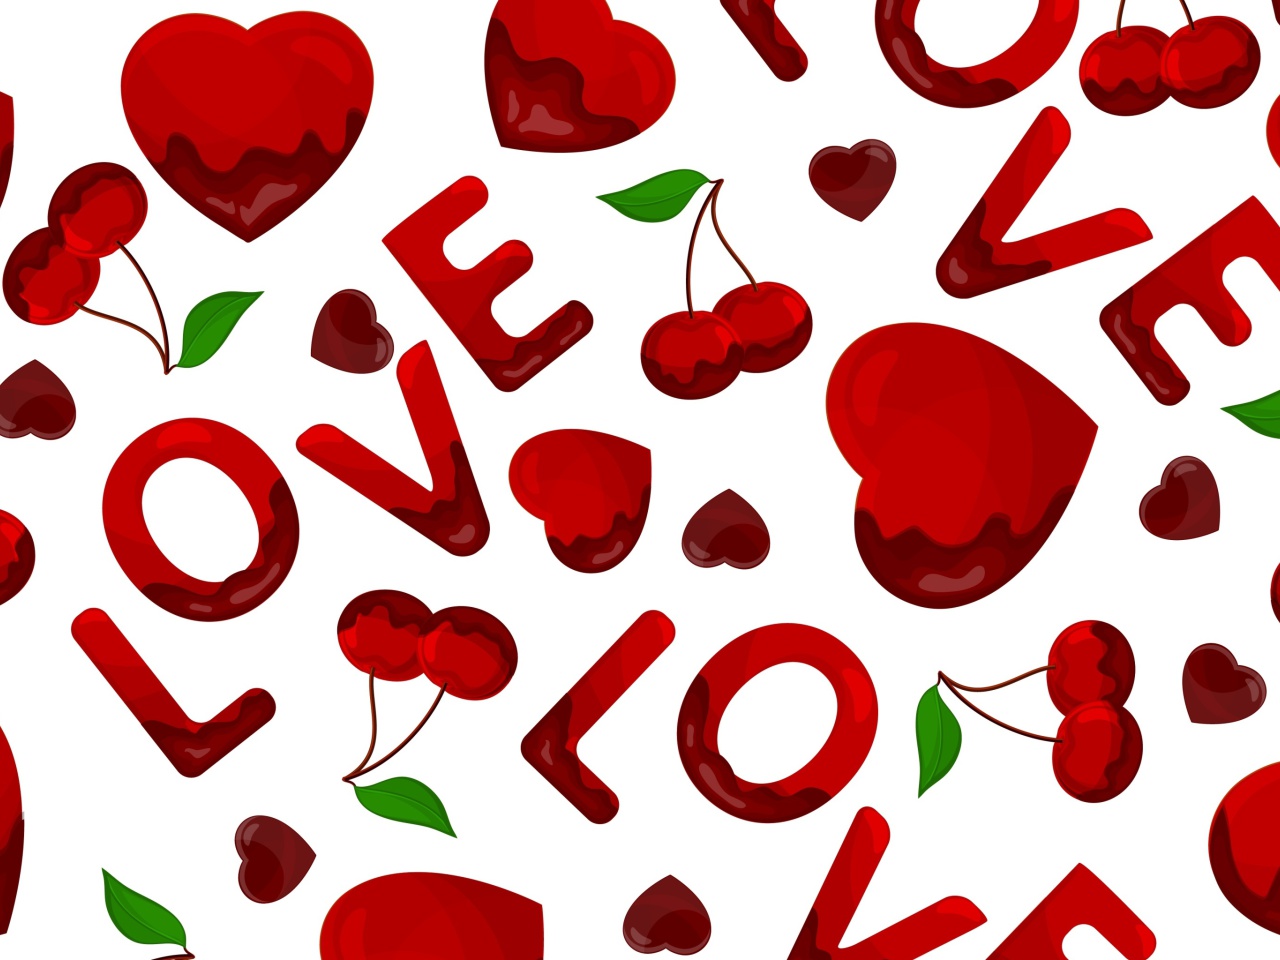 Обои Love Cherries and Hearts 1280x960